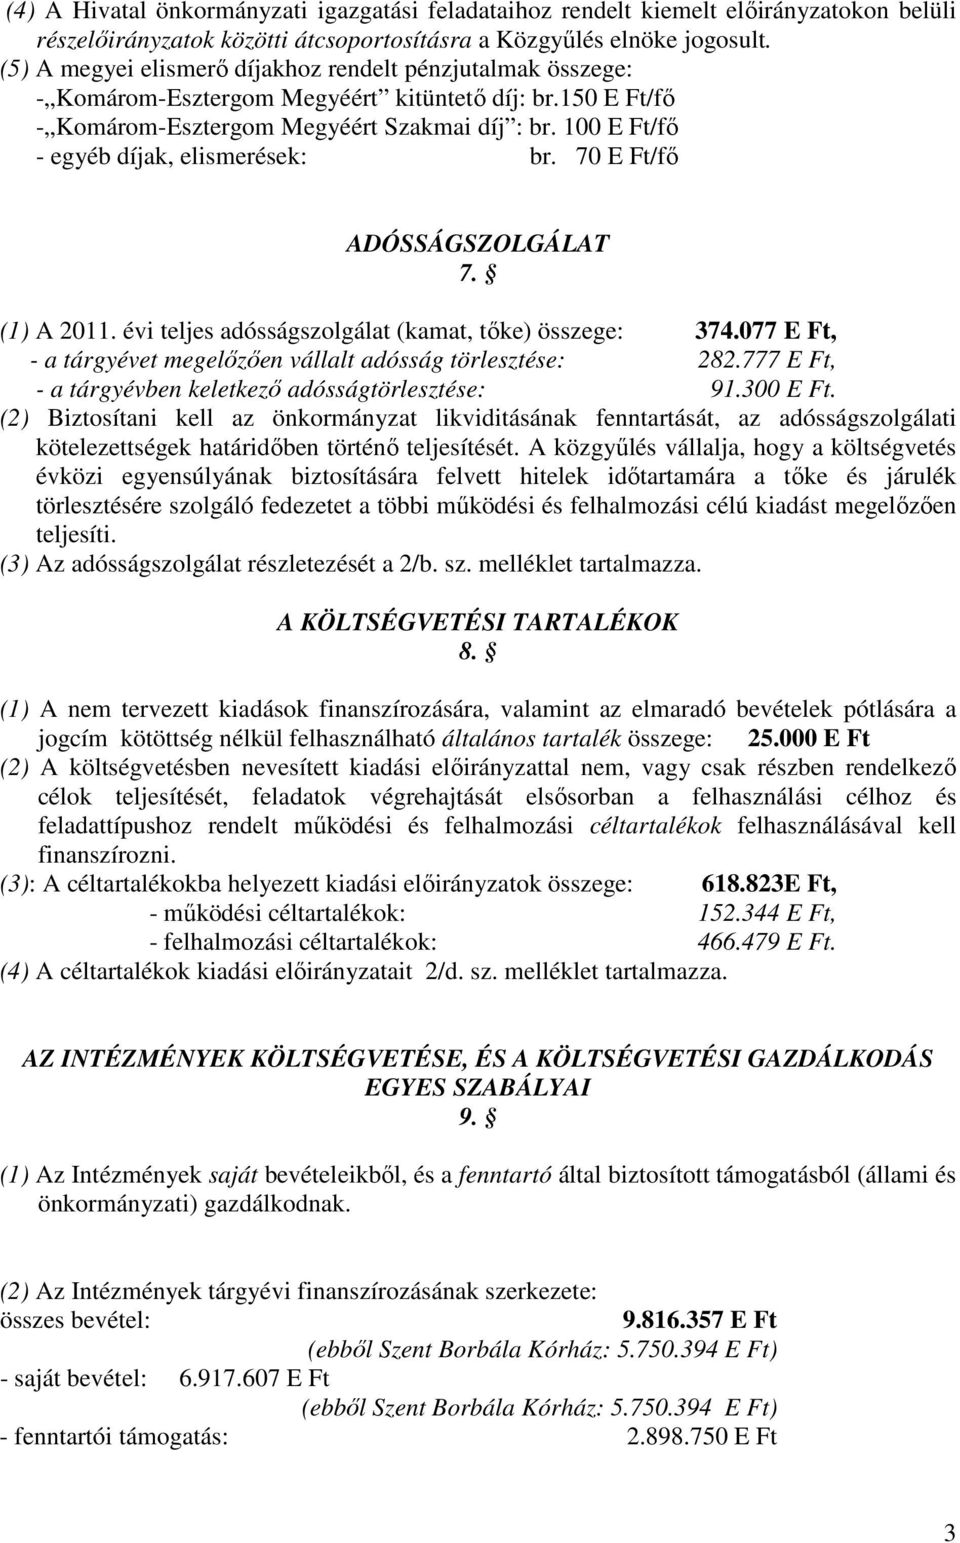 100 E Ft/fı - egyéb díjak, elismerések: br. 70 E Ft/fı ADÓSSÁGSZOLGÁLAT 7. (1) A 2011. évi teljes adósságszolgálat (kamat, tıke) összege: 374.